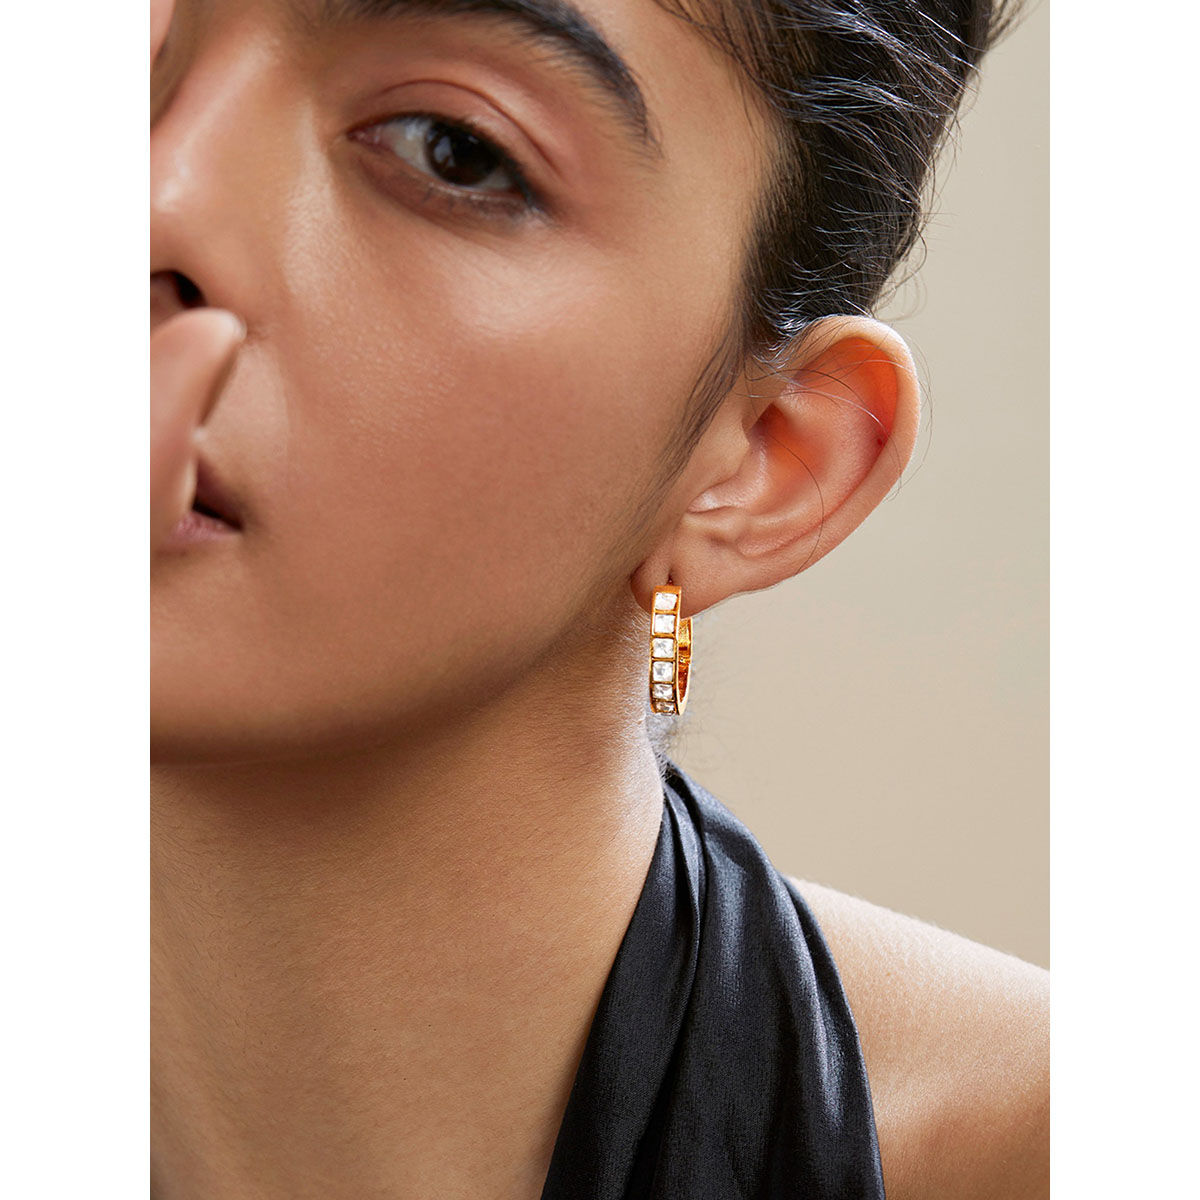 Buy Lace of Flowers Hoop Earrings Online in India  Zariin